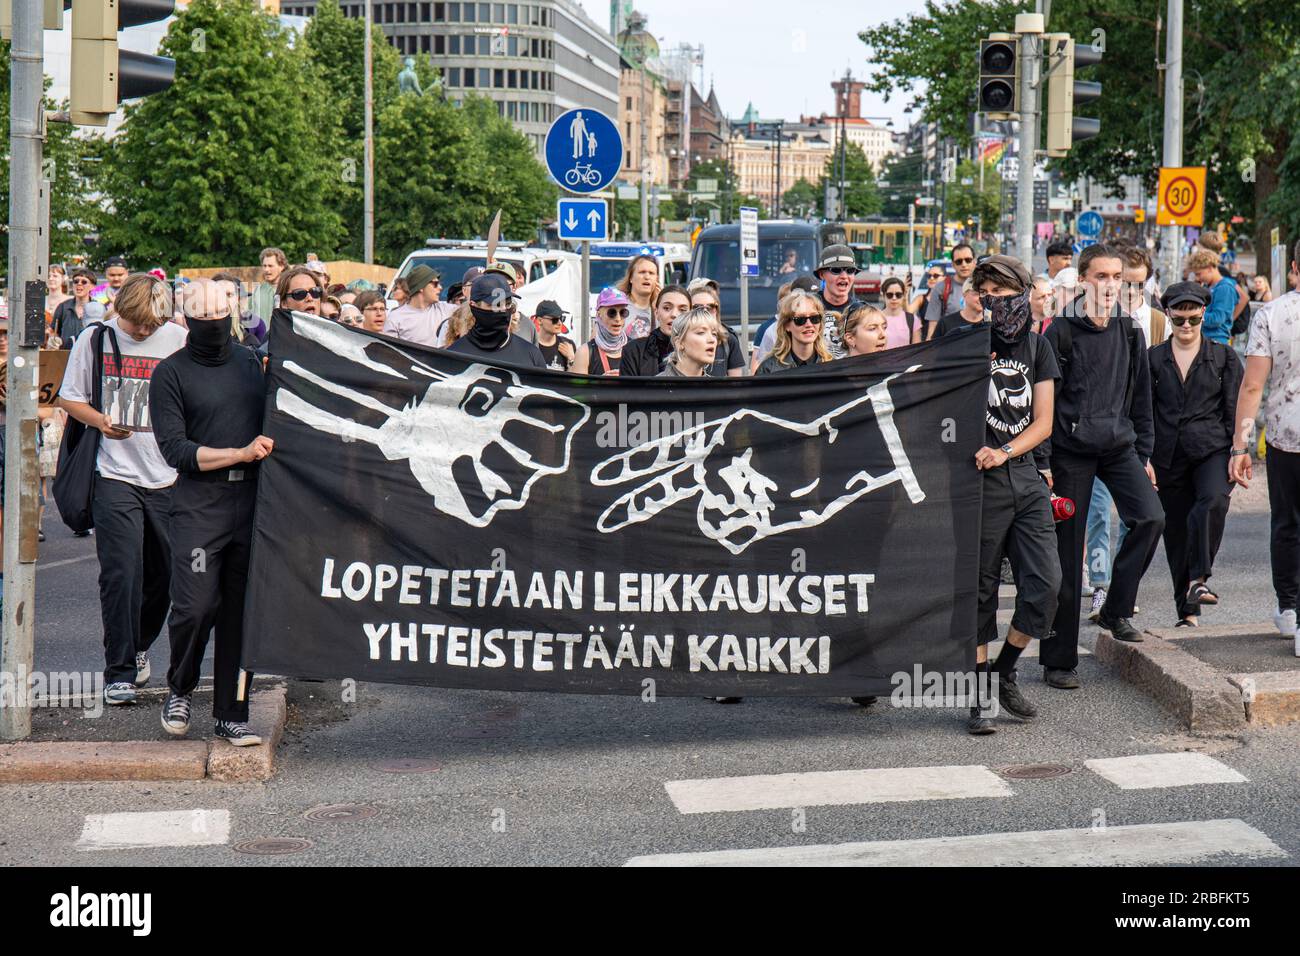 Lopetetaan leikkauset. Yhteistetään kaikki. Protesters carrying a banner at demonstration against right-wing government in Helsinki, Finland. Stock Photo